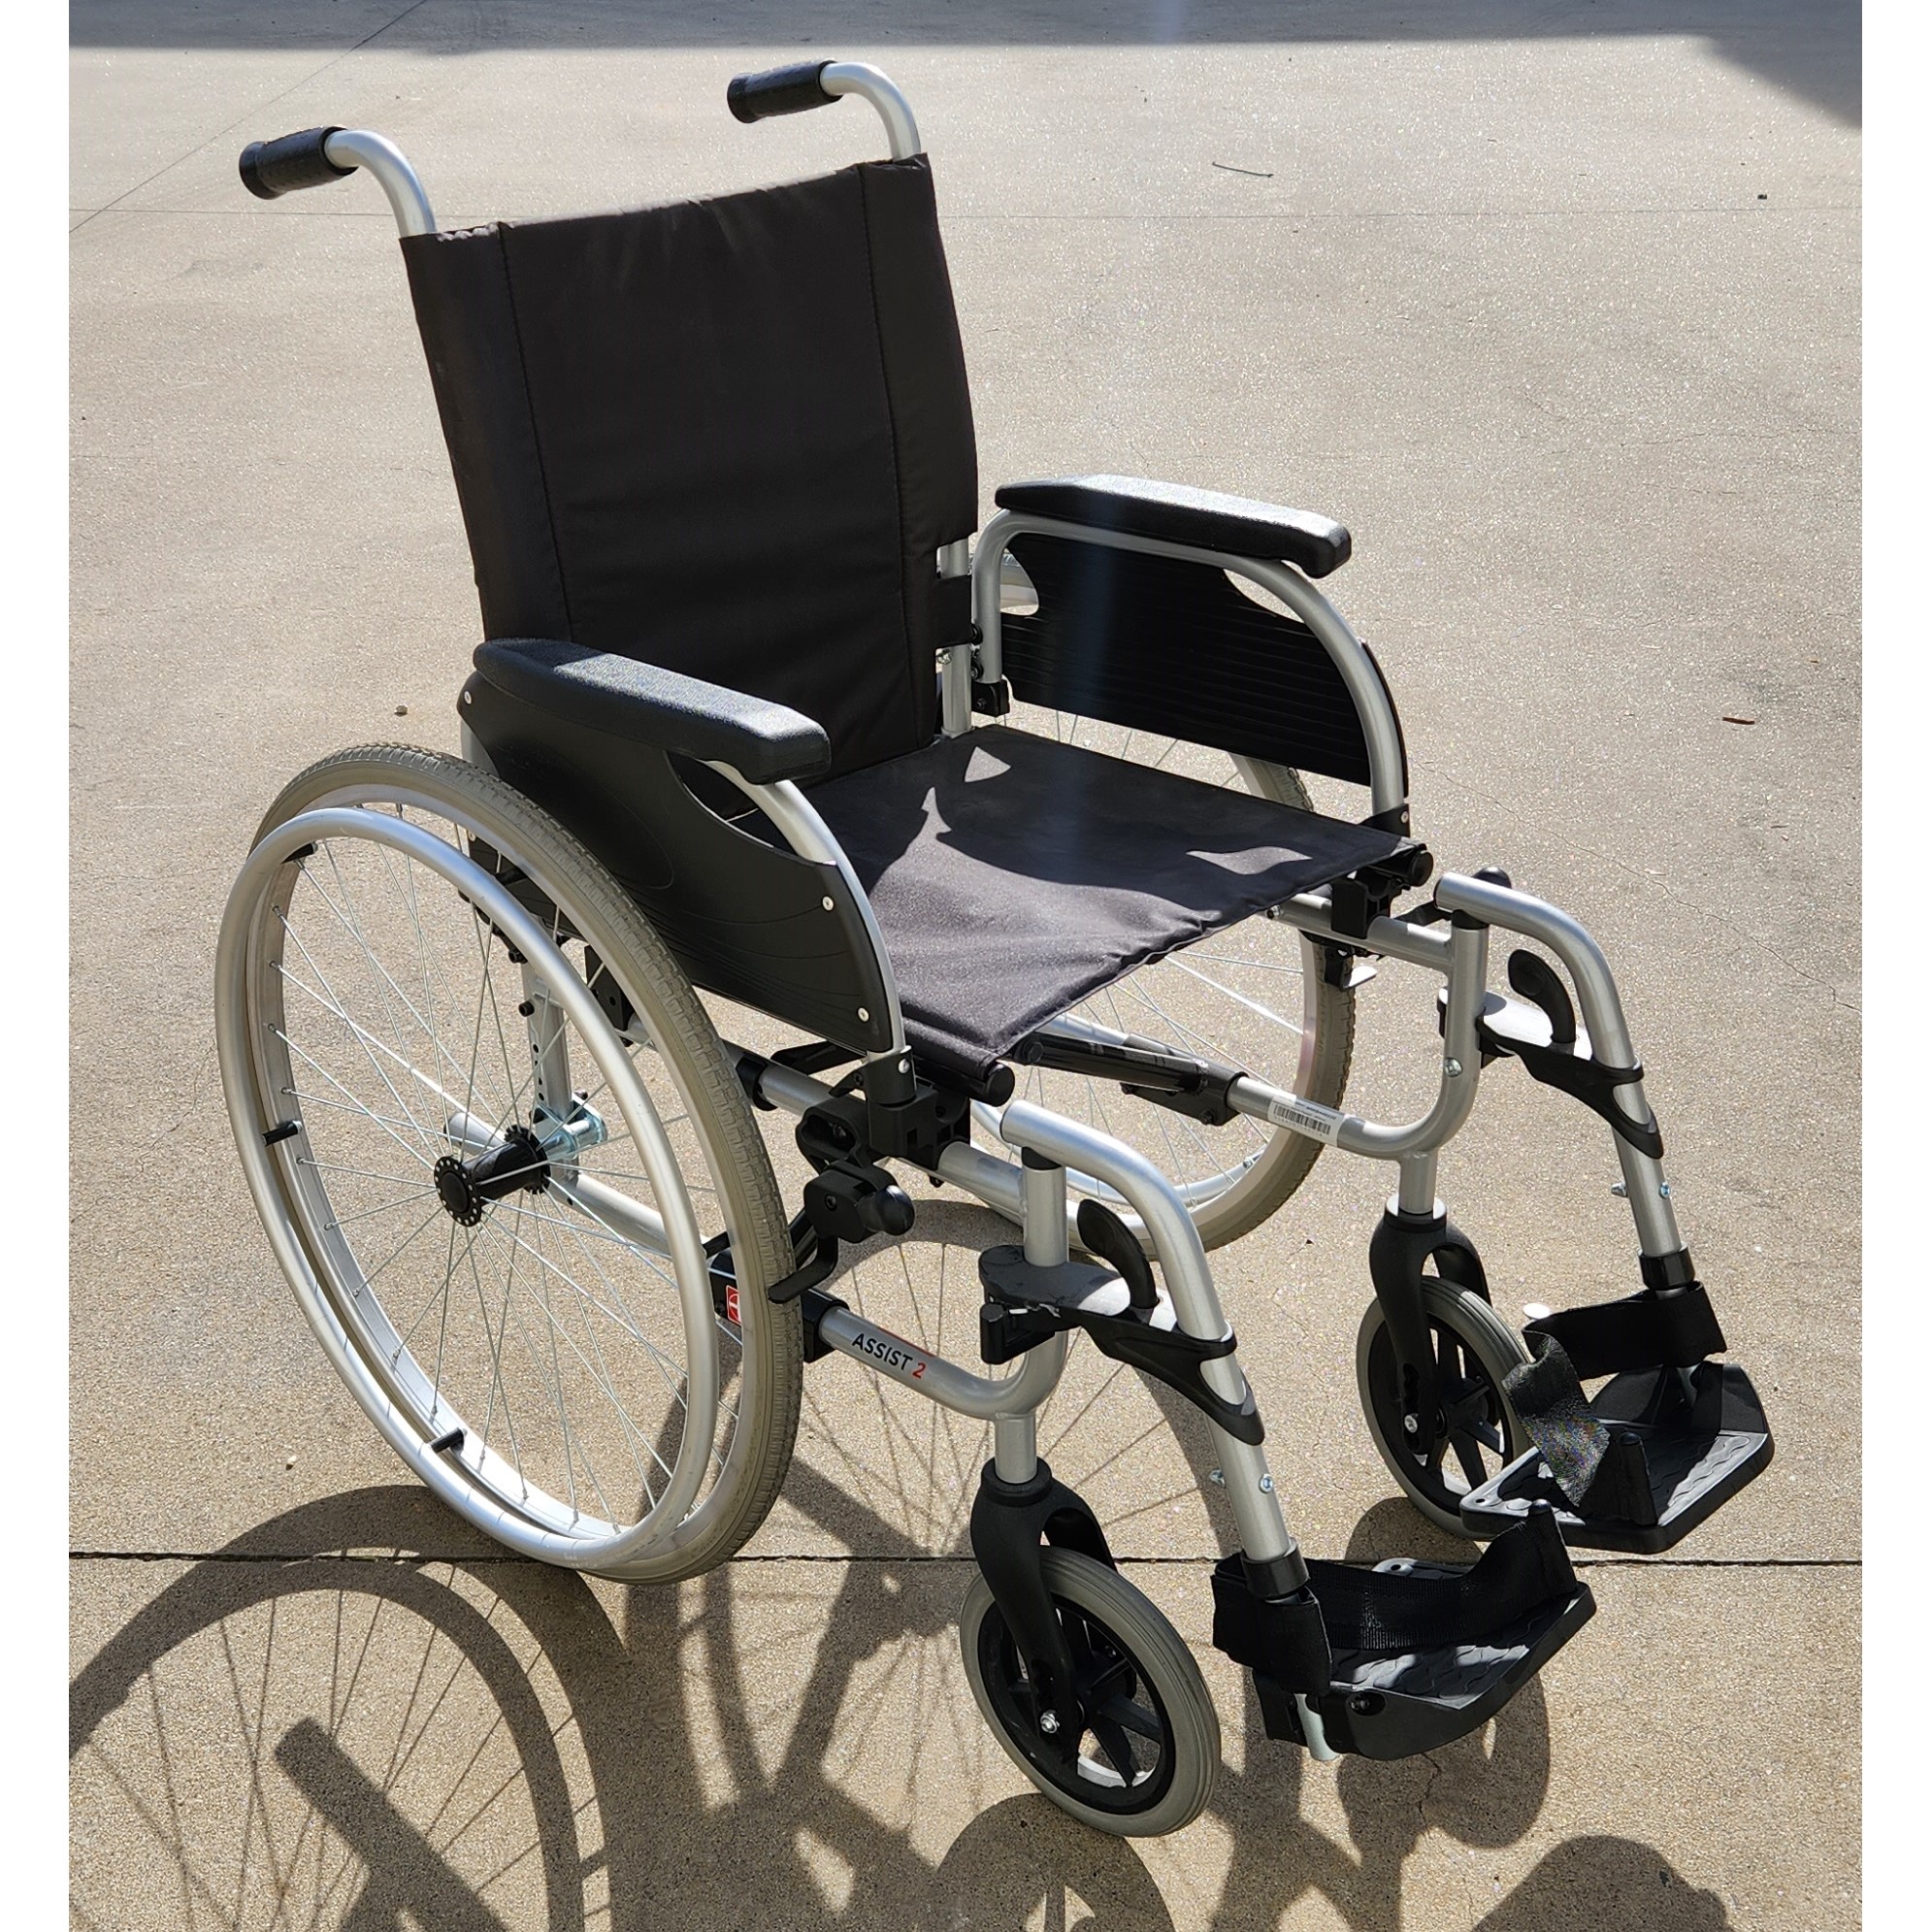 Aspire Assist 2 Manual Wheelchair